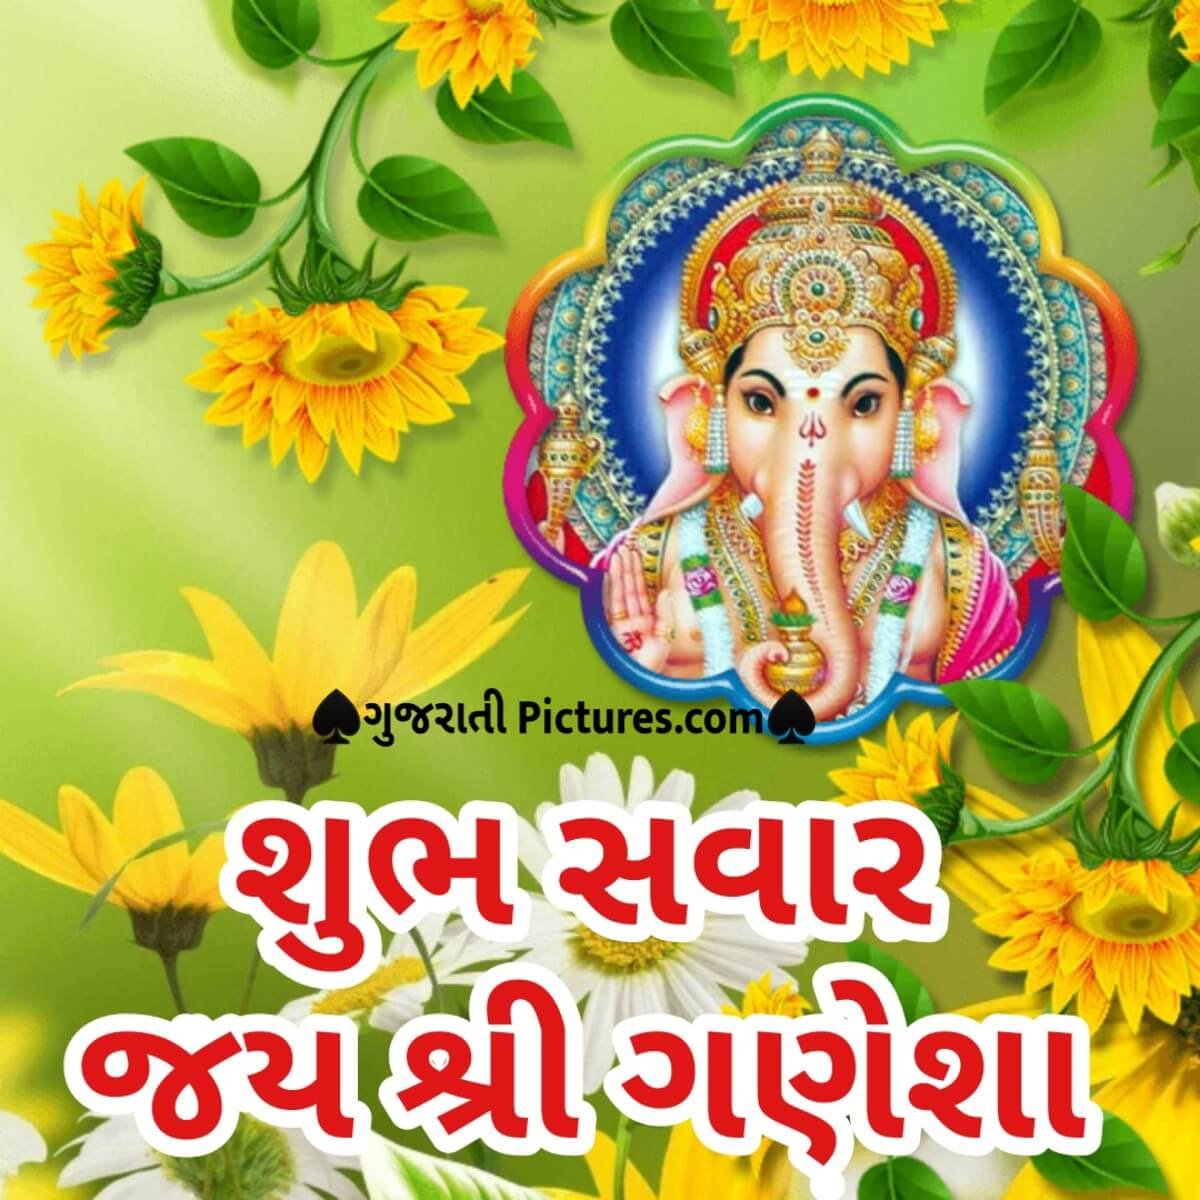 Shubh Savar Jai Shri Ganesha